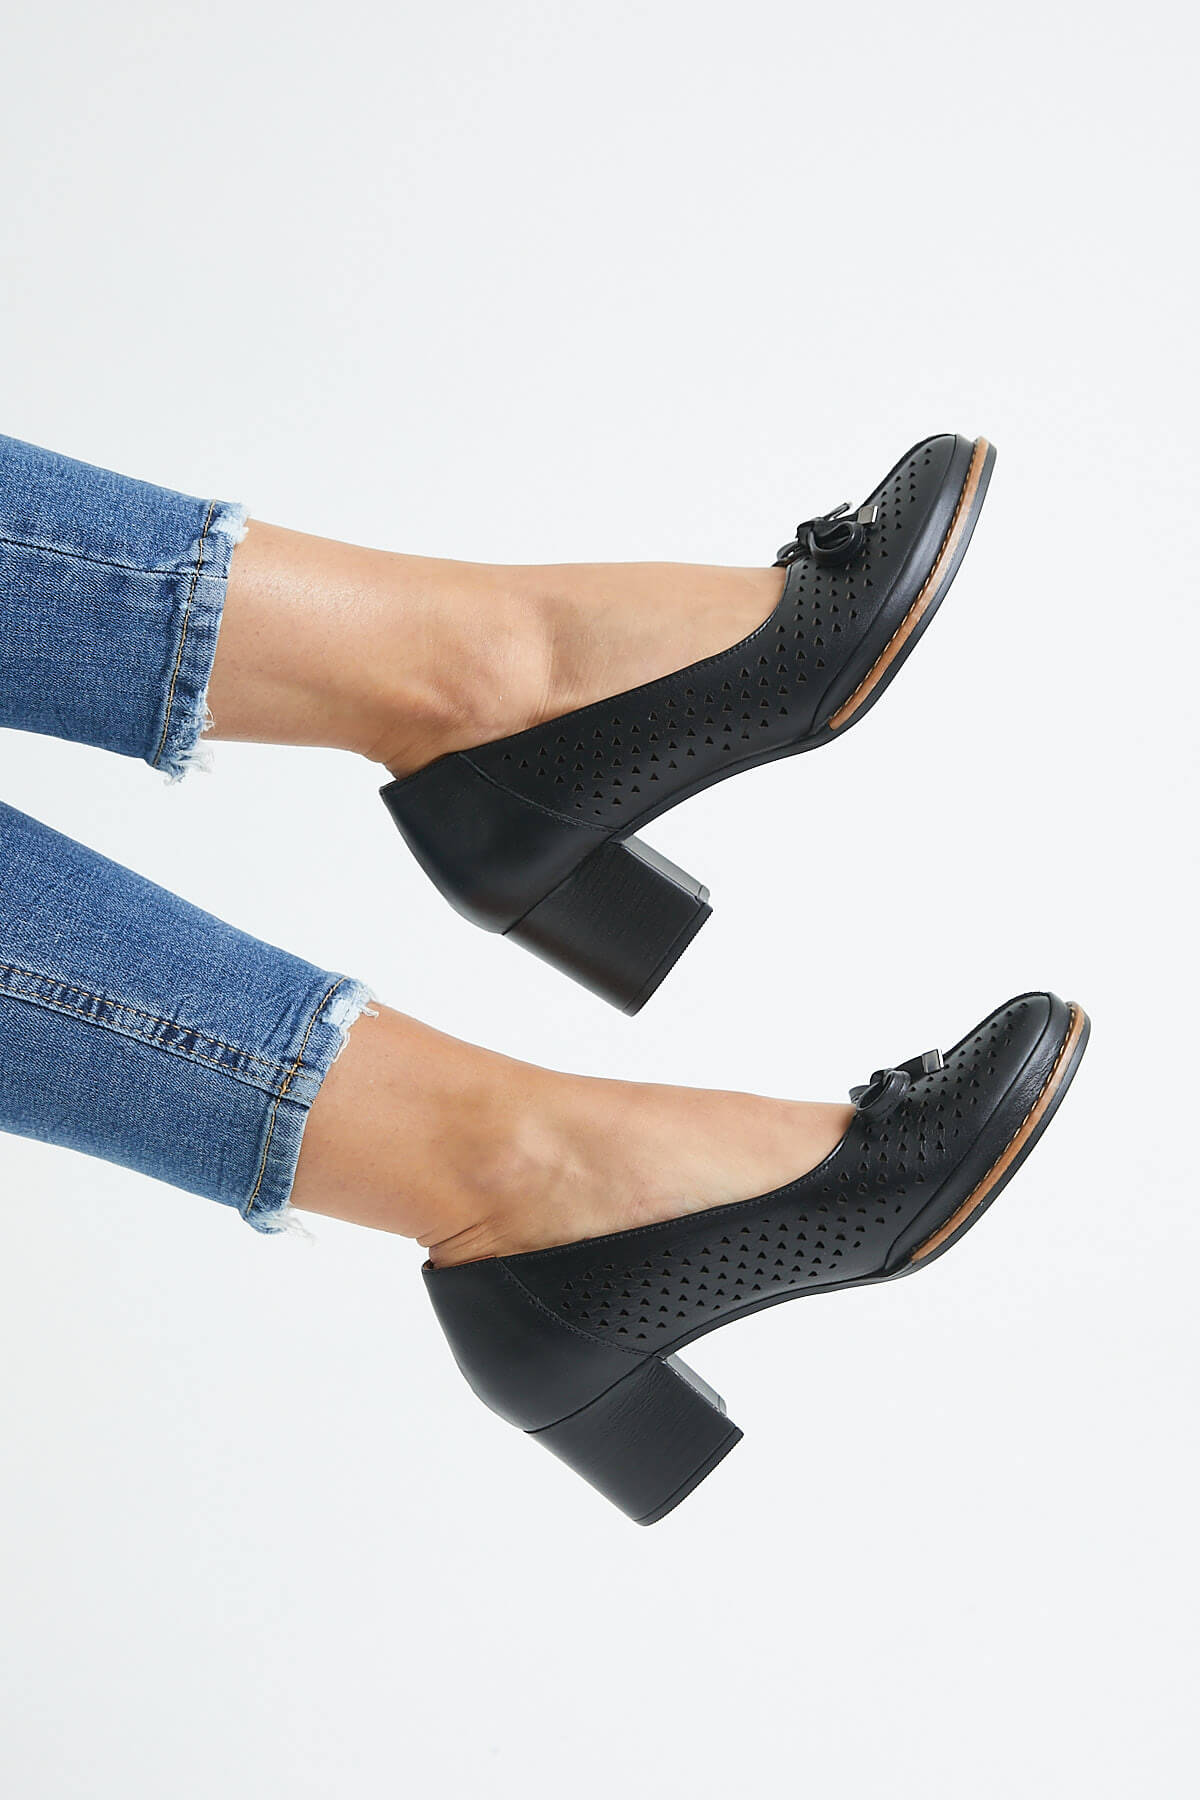 Kadın Topuklu Deri Ayakkabı Siyah 2113301Y